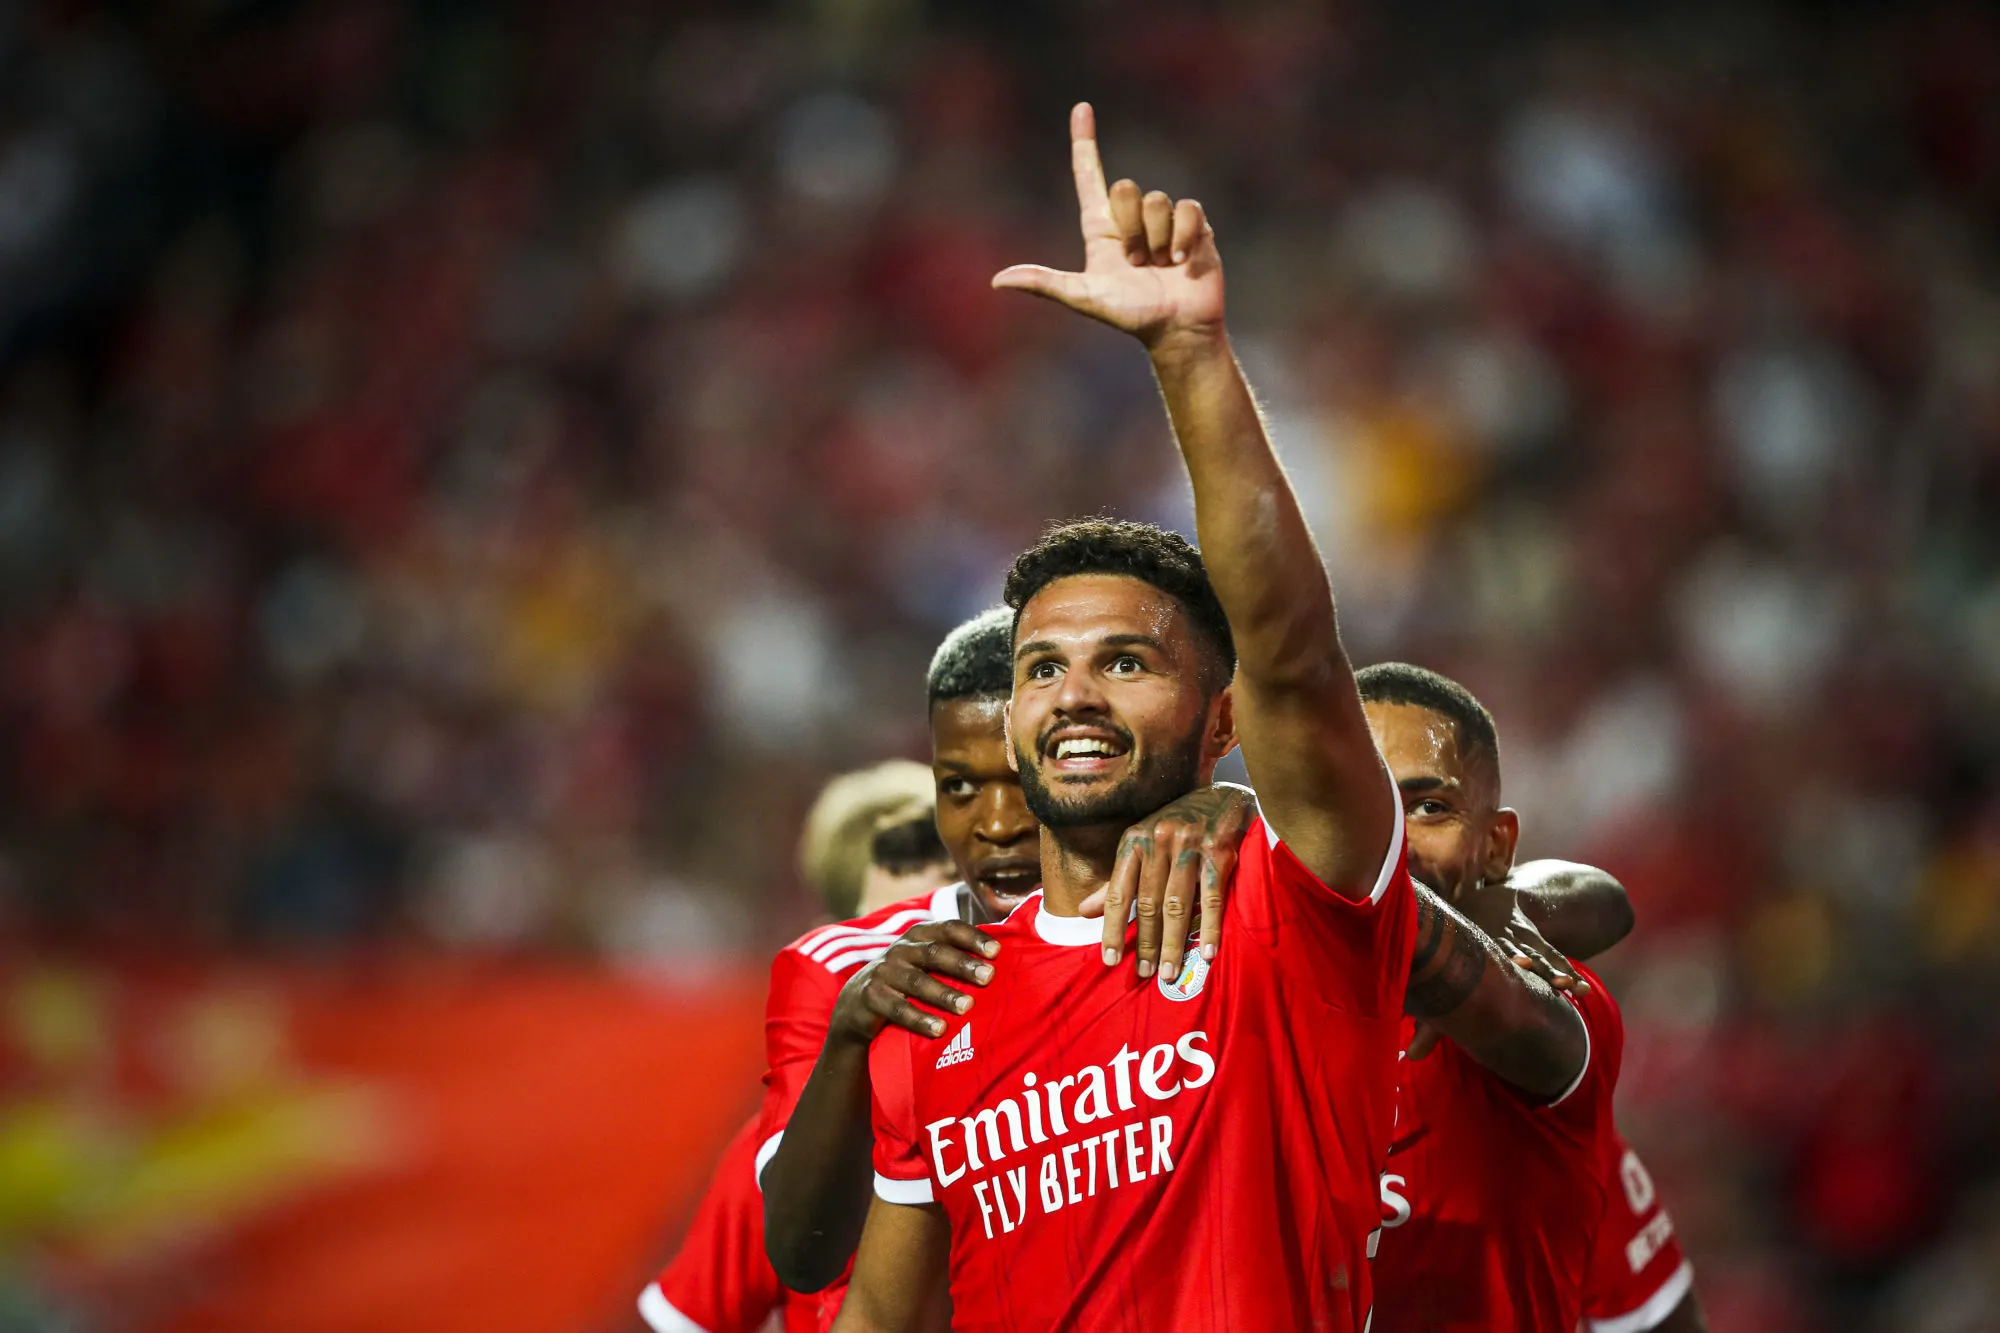 Pronostic Benfica Arouca : Analyse, cotes et prono du match du championnat portugais